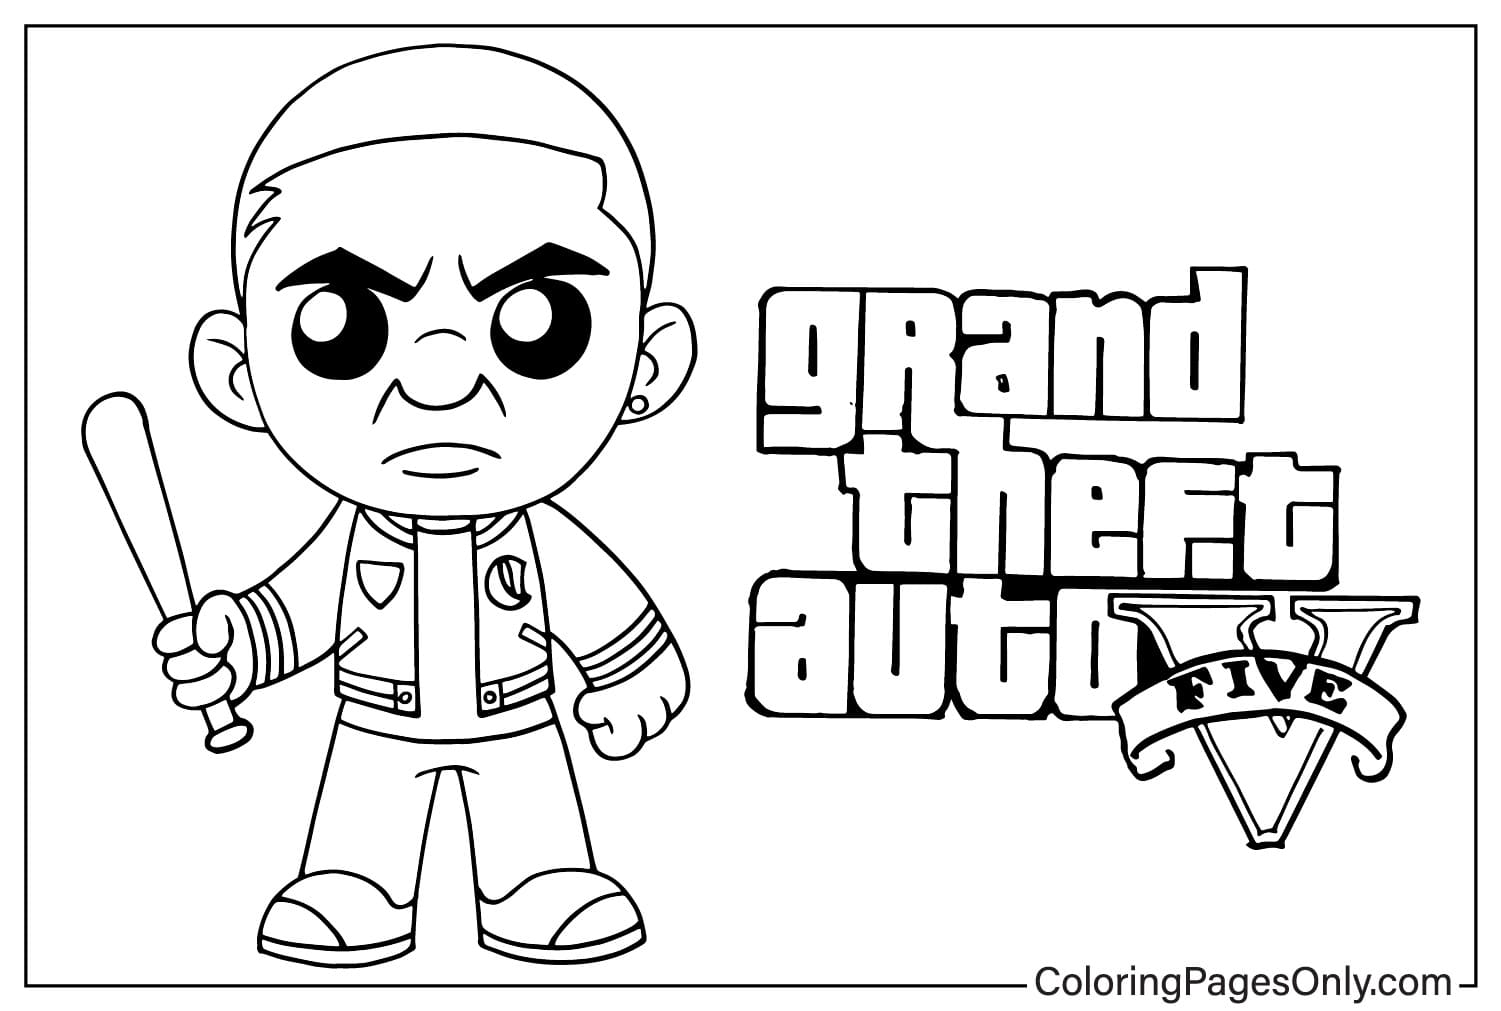 Grand Theft Auto V(GTA 5) Grand Theft Auto V(GTA 5) 中的赤壁角色